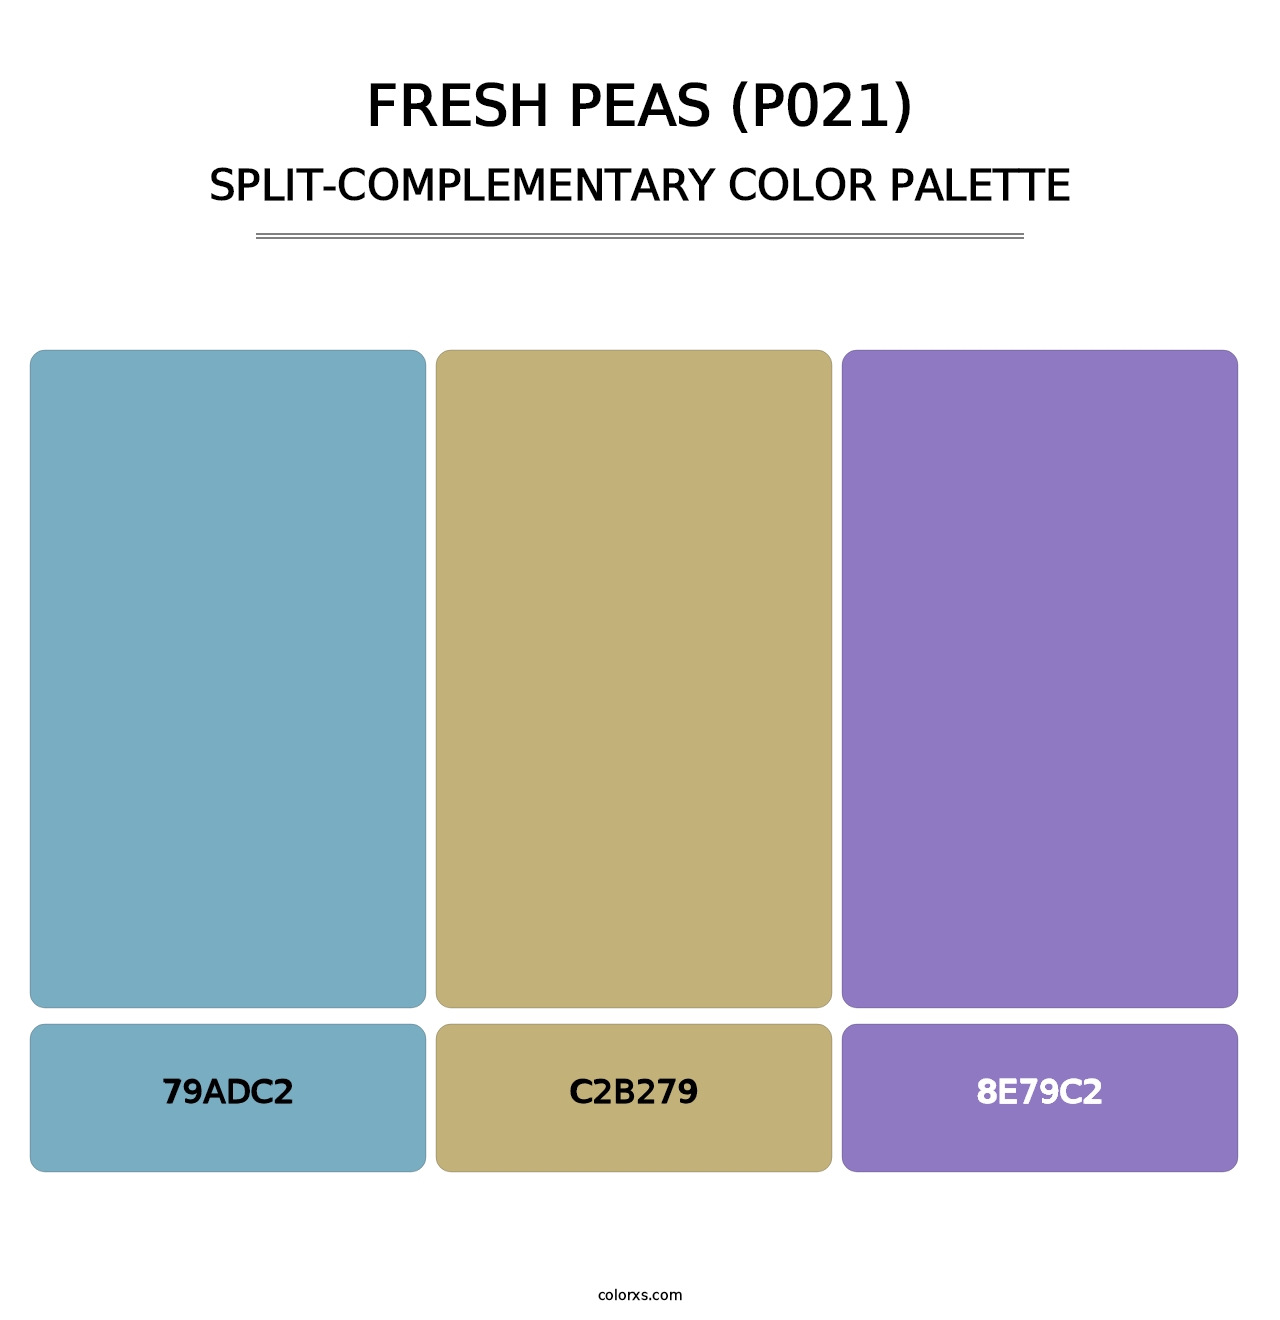 Fresh Peas (P021) - Split-Complementary Color Palette